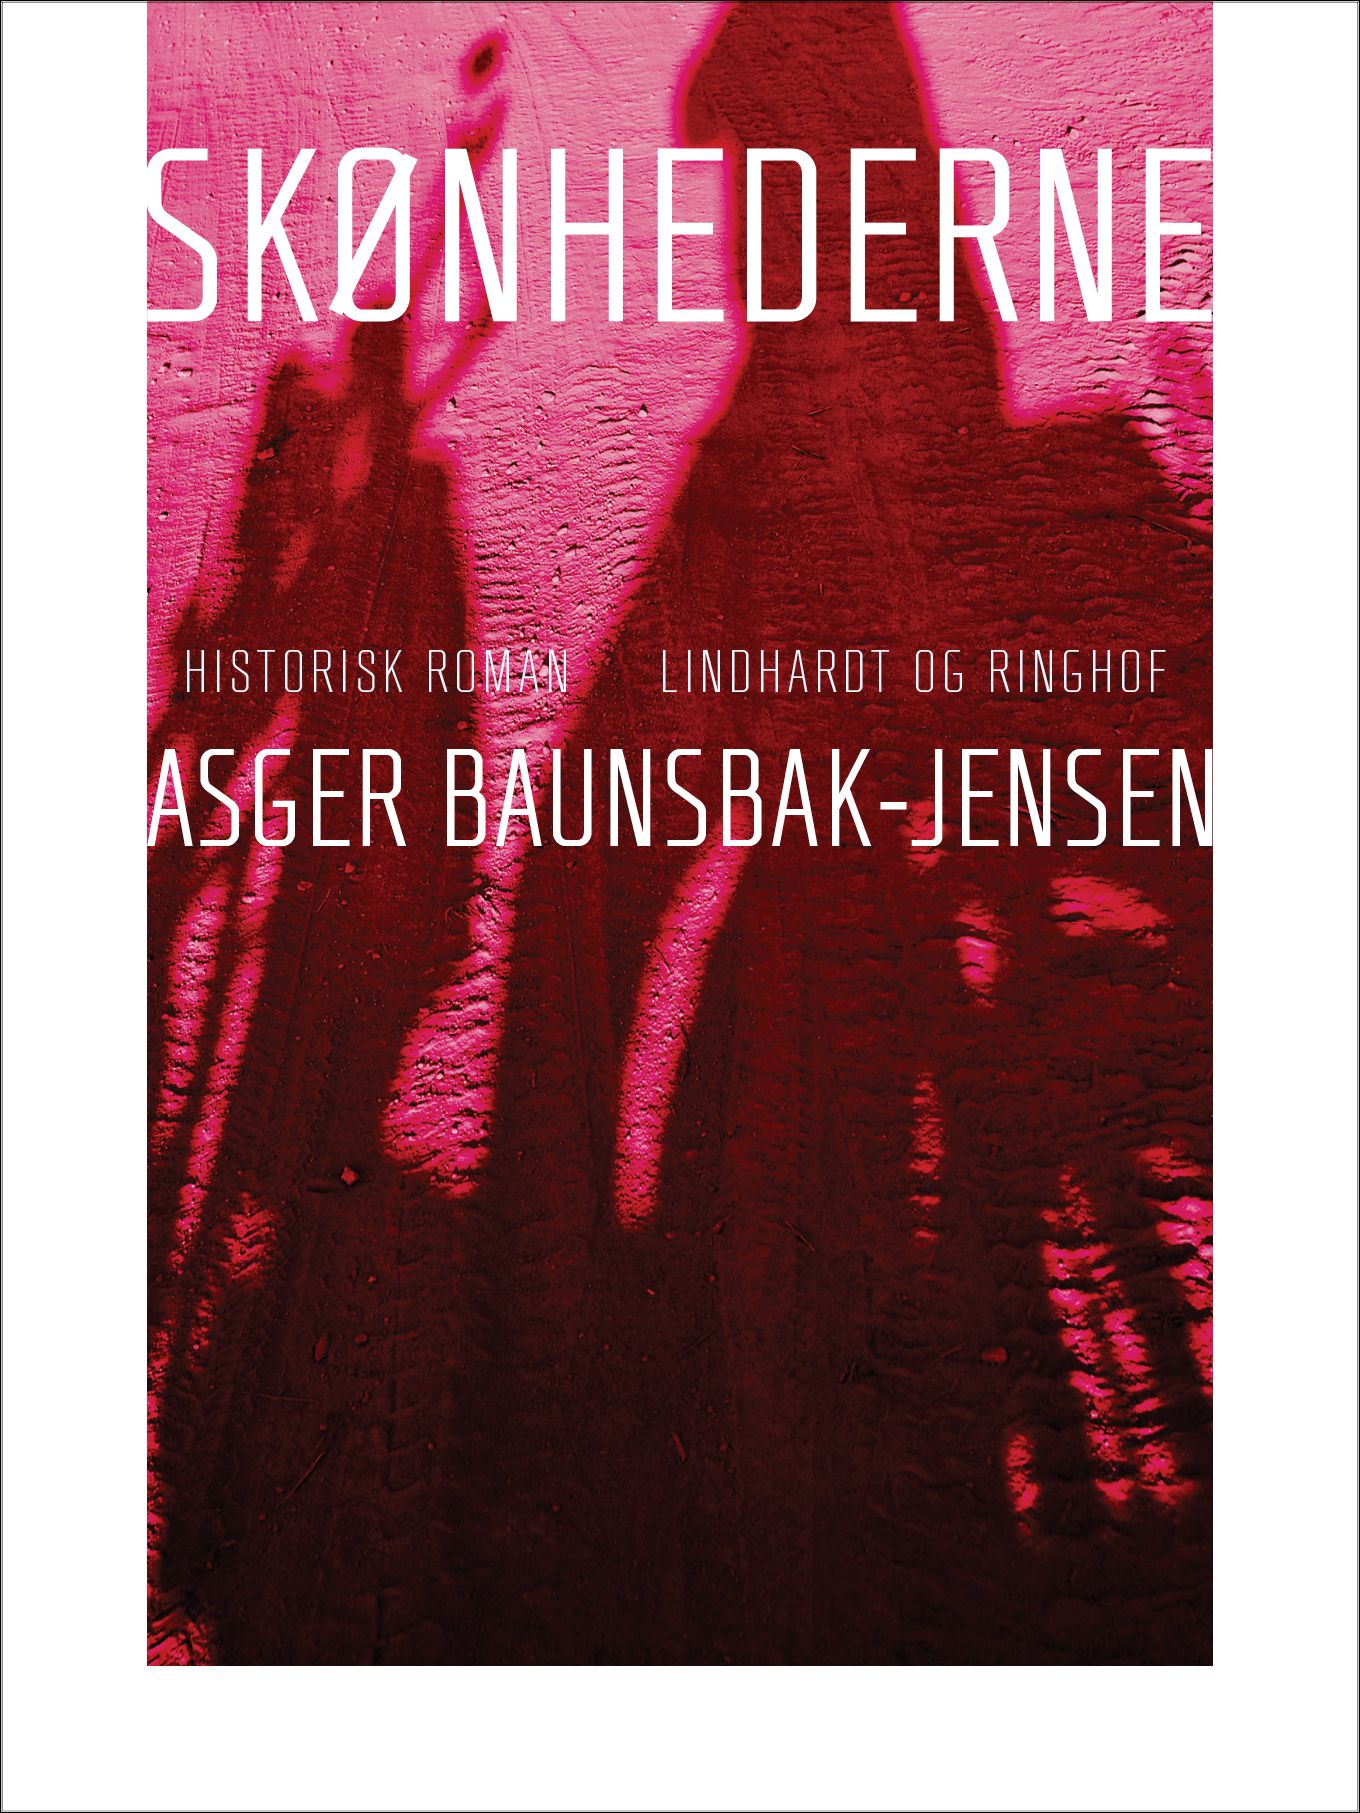 Skønhederne, e-bok av Asger Baunsbak-Jensen